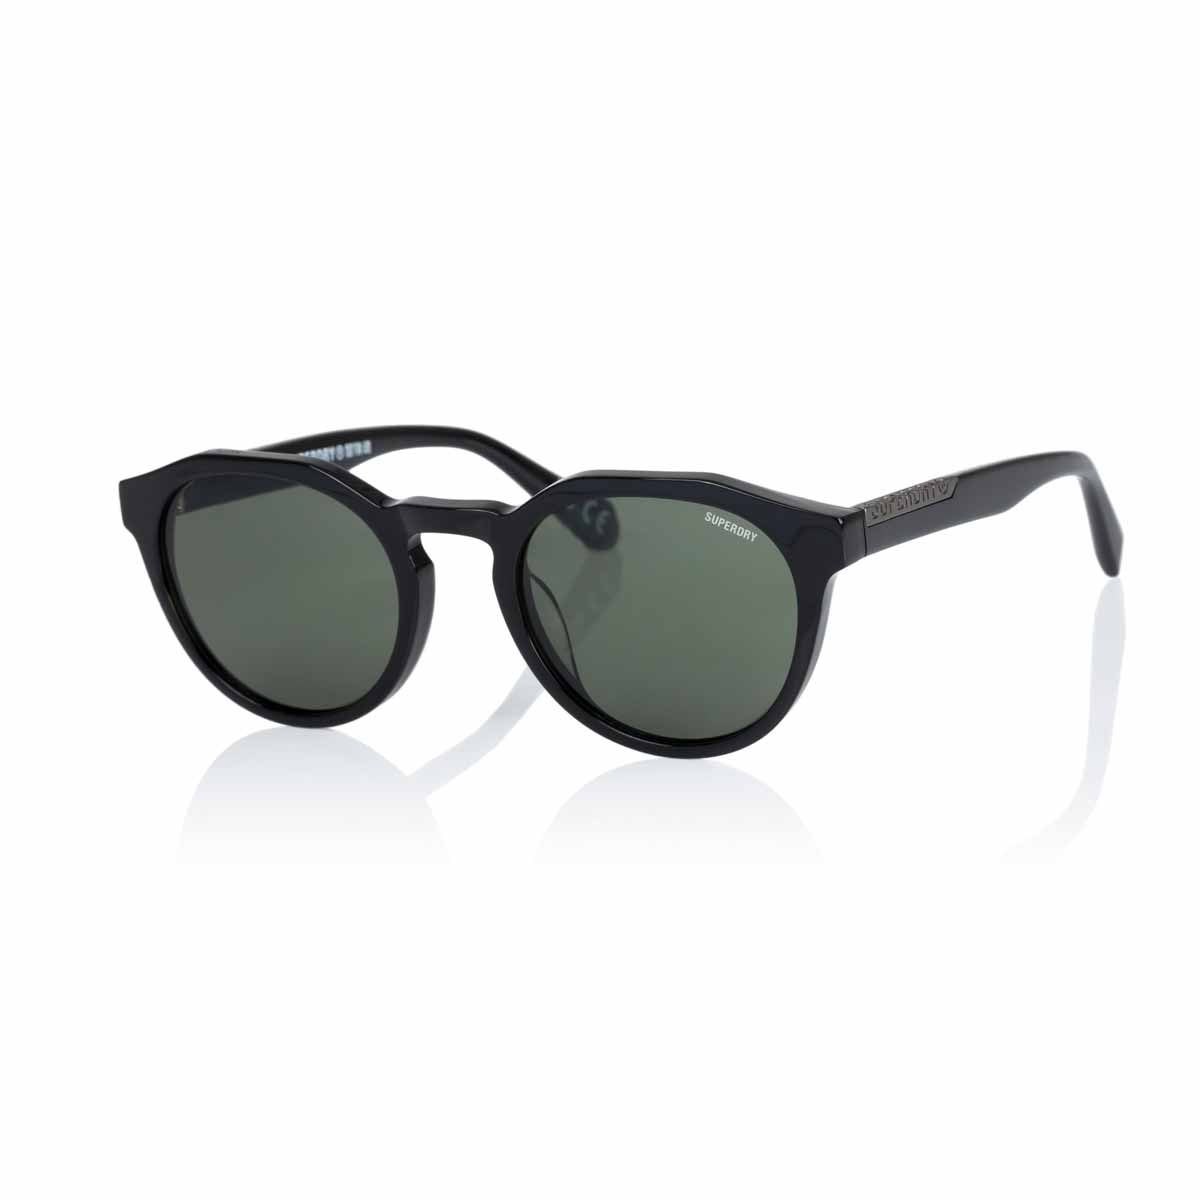 Sunglasses Superdry SDS 5012 – 104 Shiny black / Vintage green